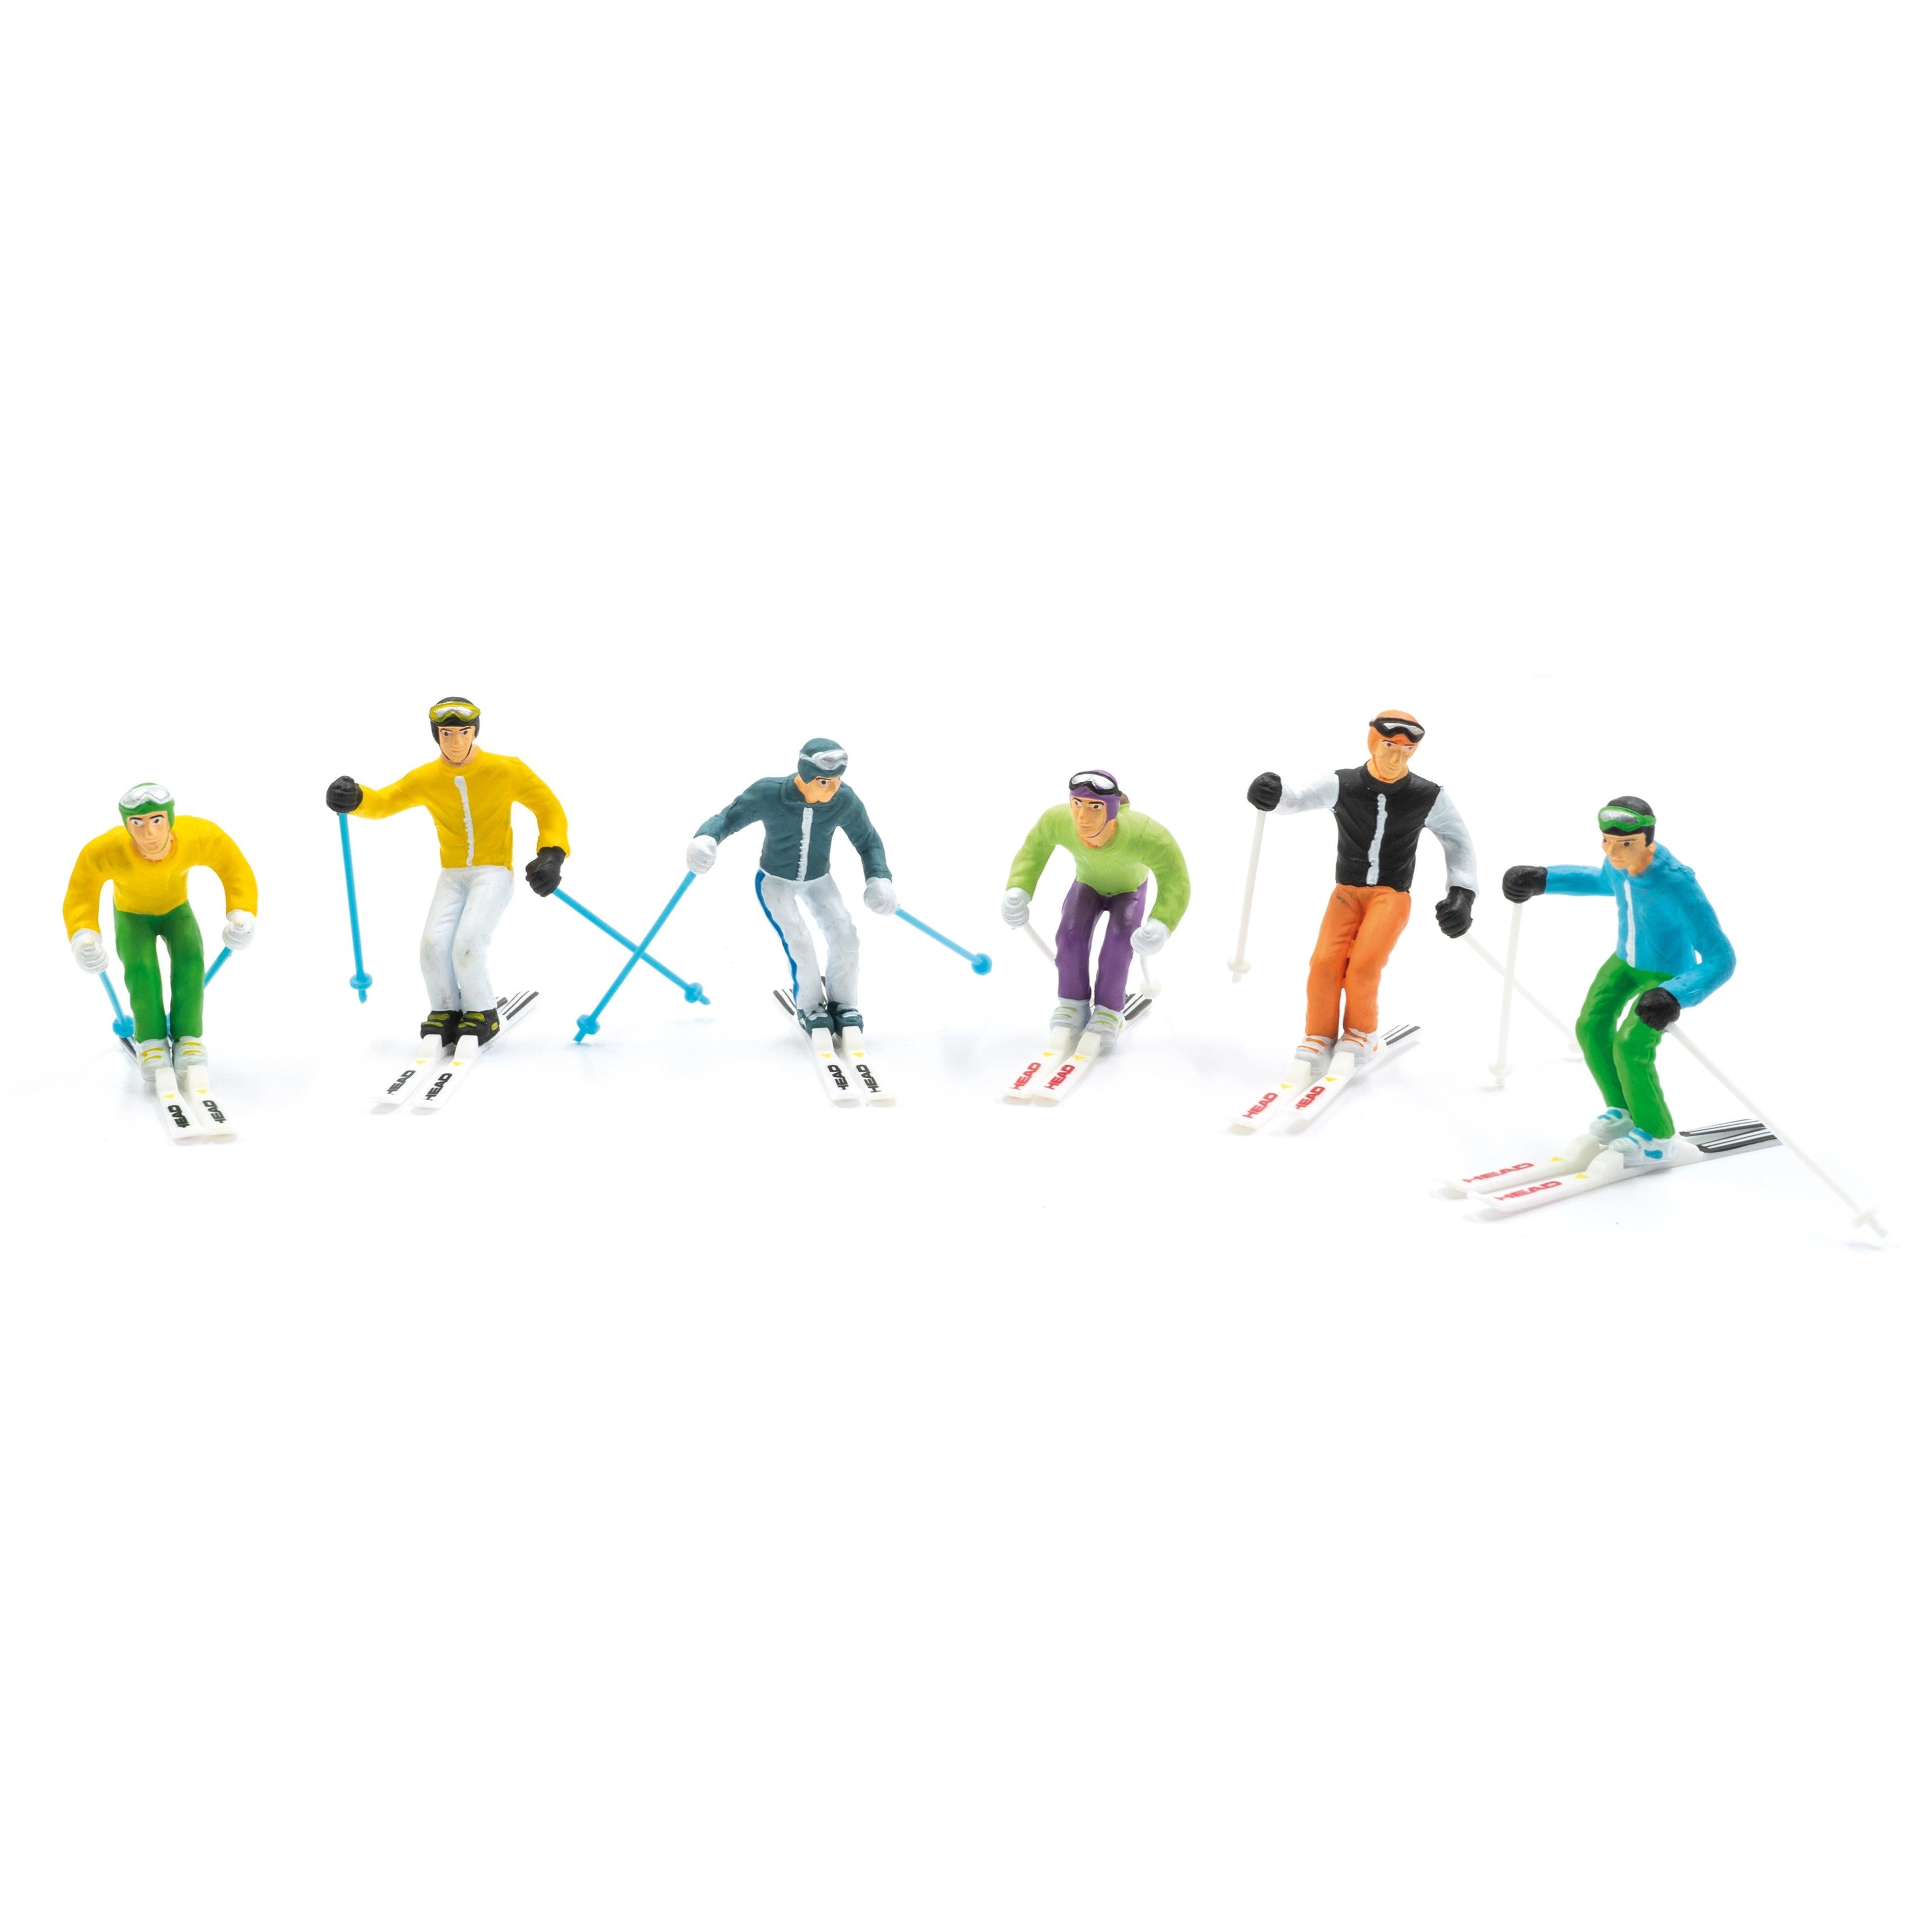 Jägerndorfer - 6 Figuren stehend (mit Skier) - KleinLand